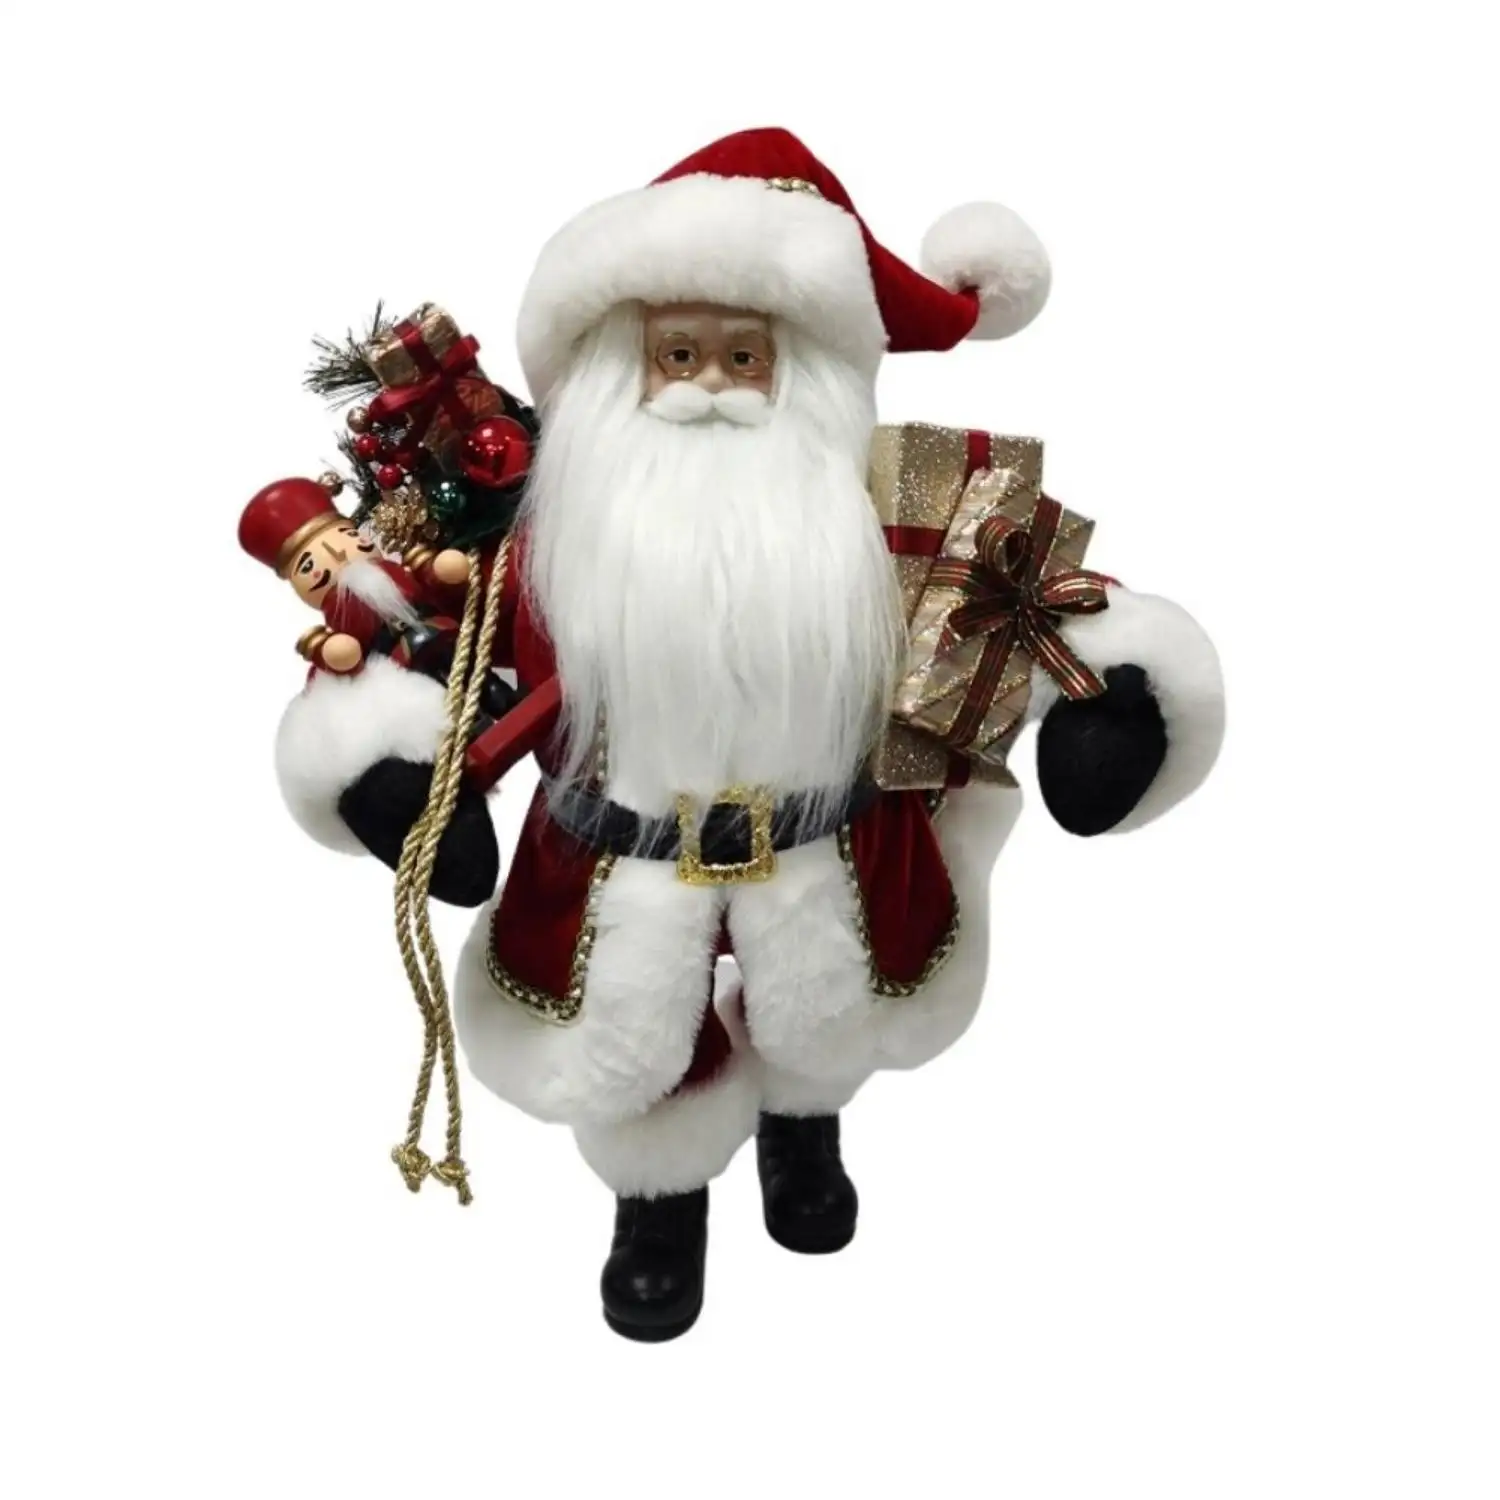 Santa Claus Toy aufblasbare hängende Baum dekoration Produkte liefert Dekorationen Snom Angel Ornamente Weihnachts plüsch